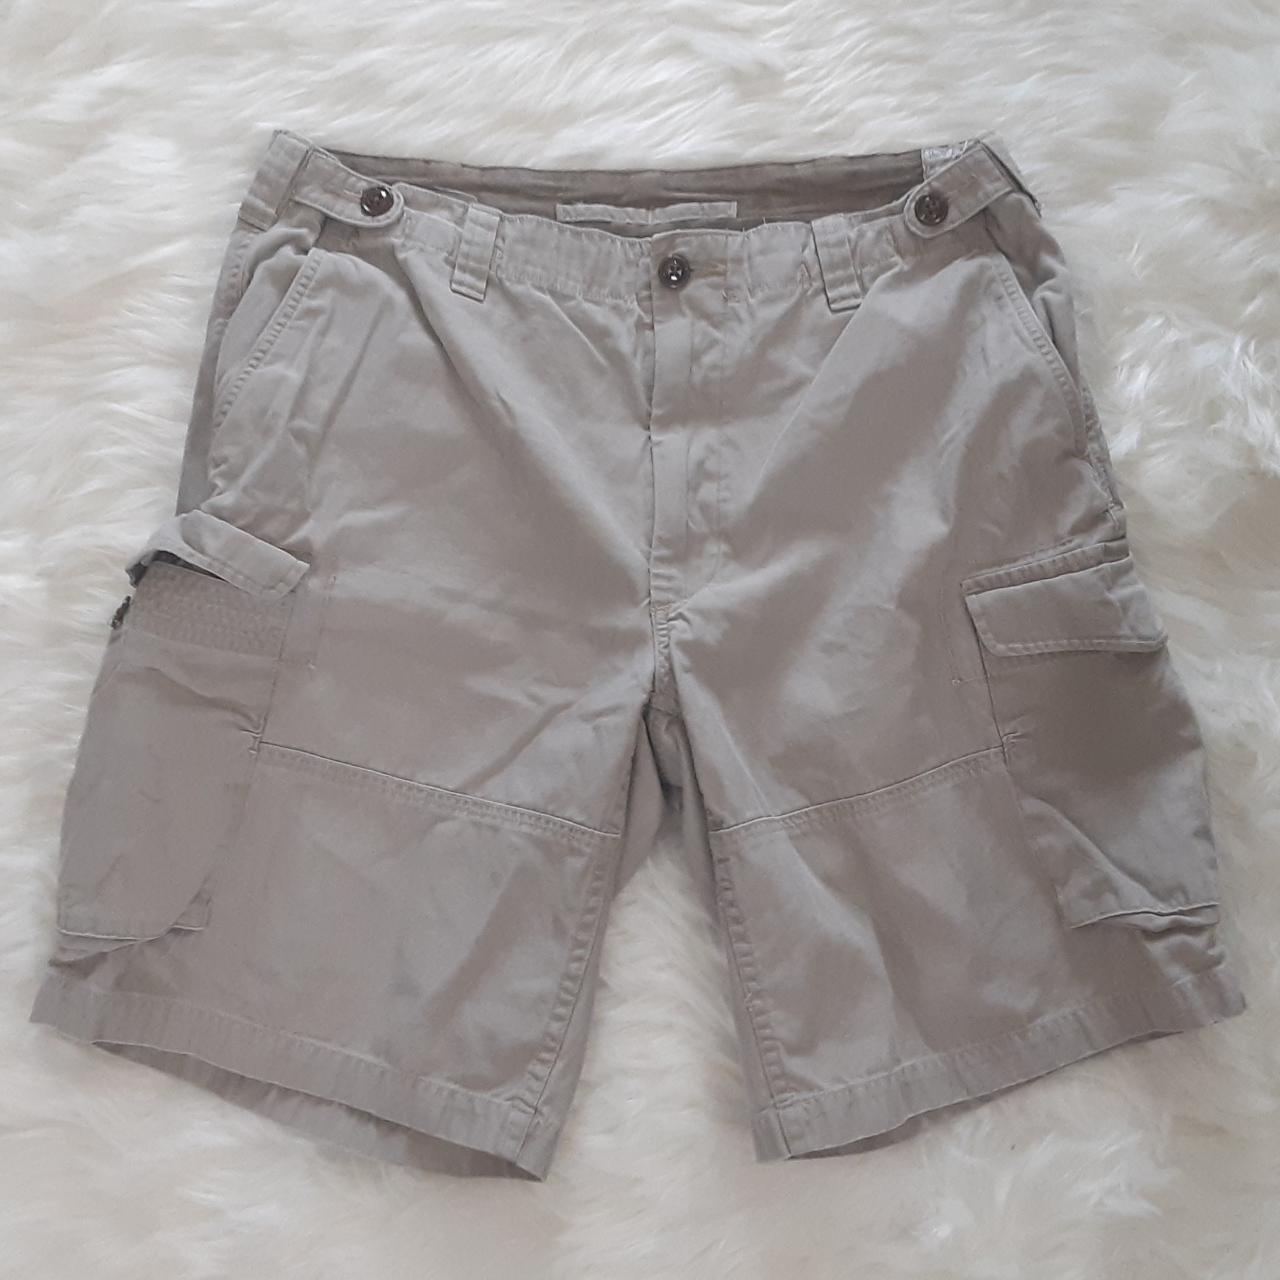 Vintage Polo Ralph Lauren Men's Shorts (Size 36)... - Depop